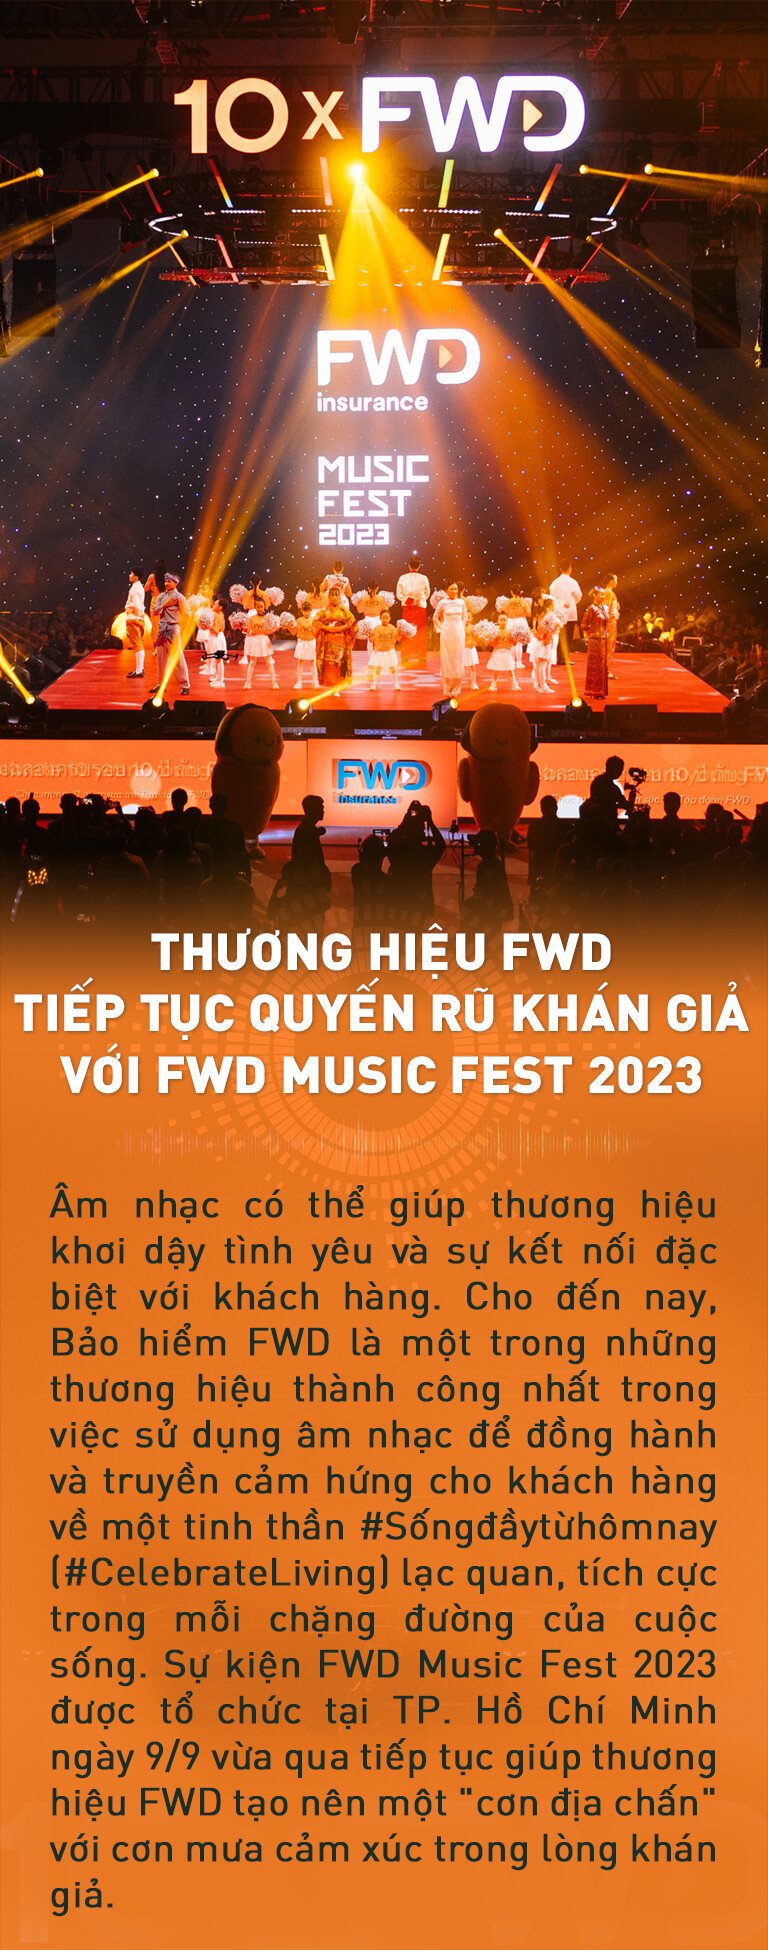 Thương hiệu FWD tiếp tục quyến rũ khán giả với FWD Music Fest 2023 - 6